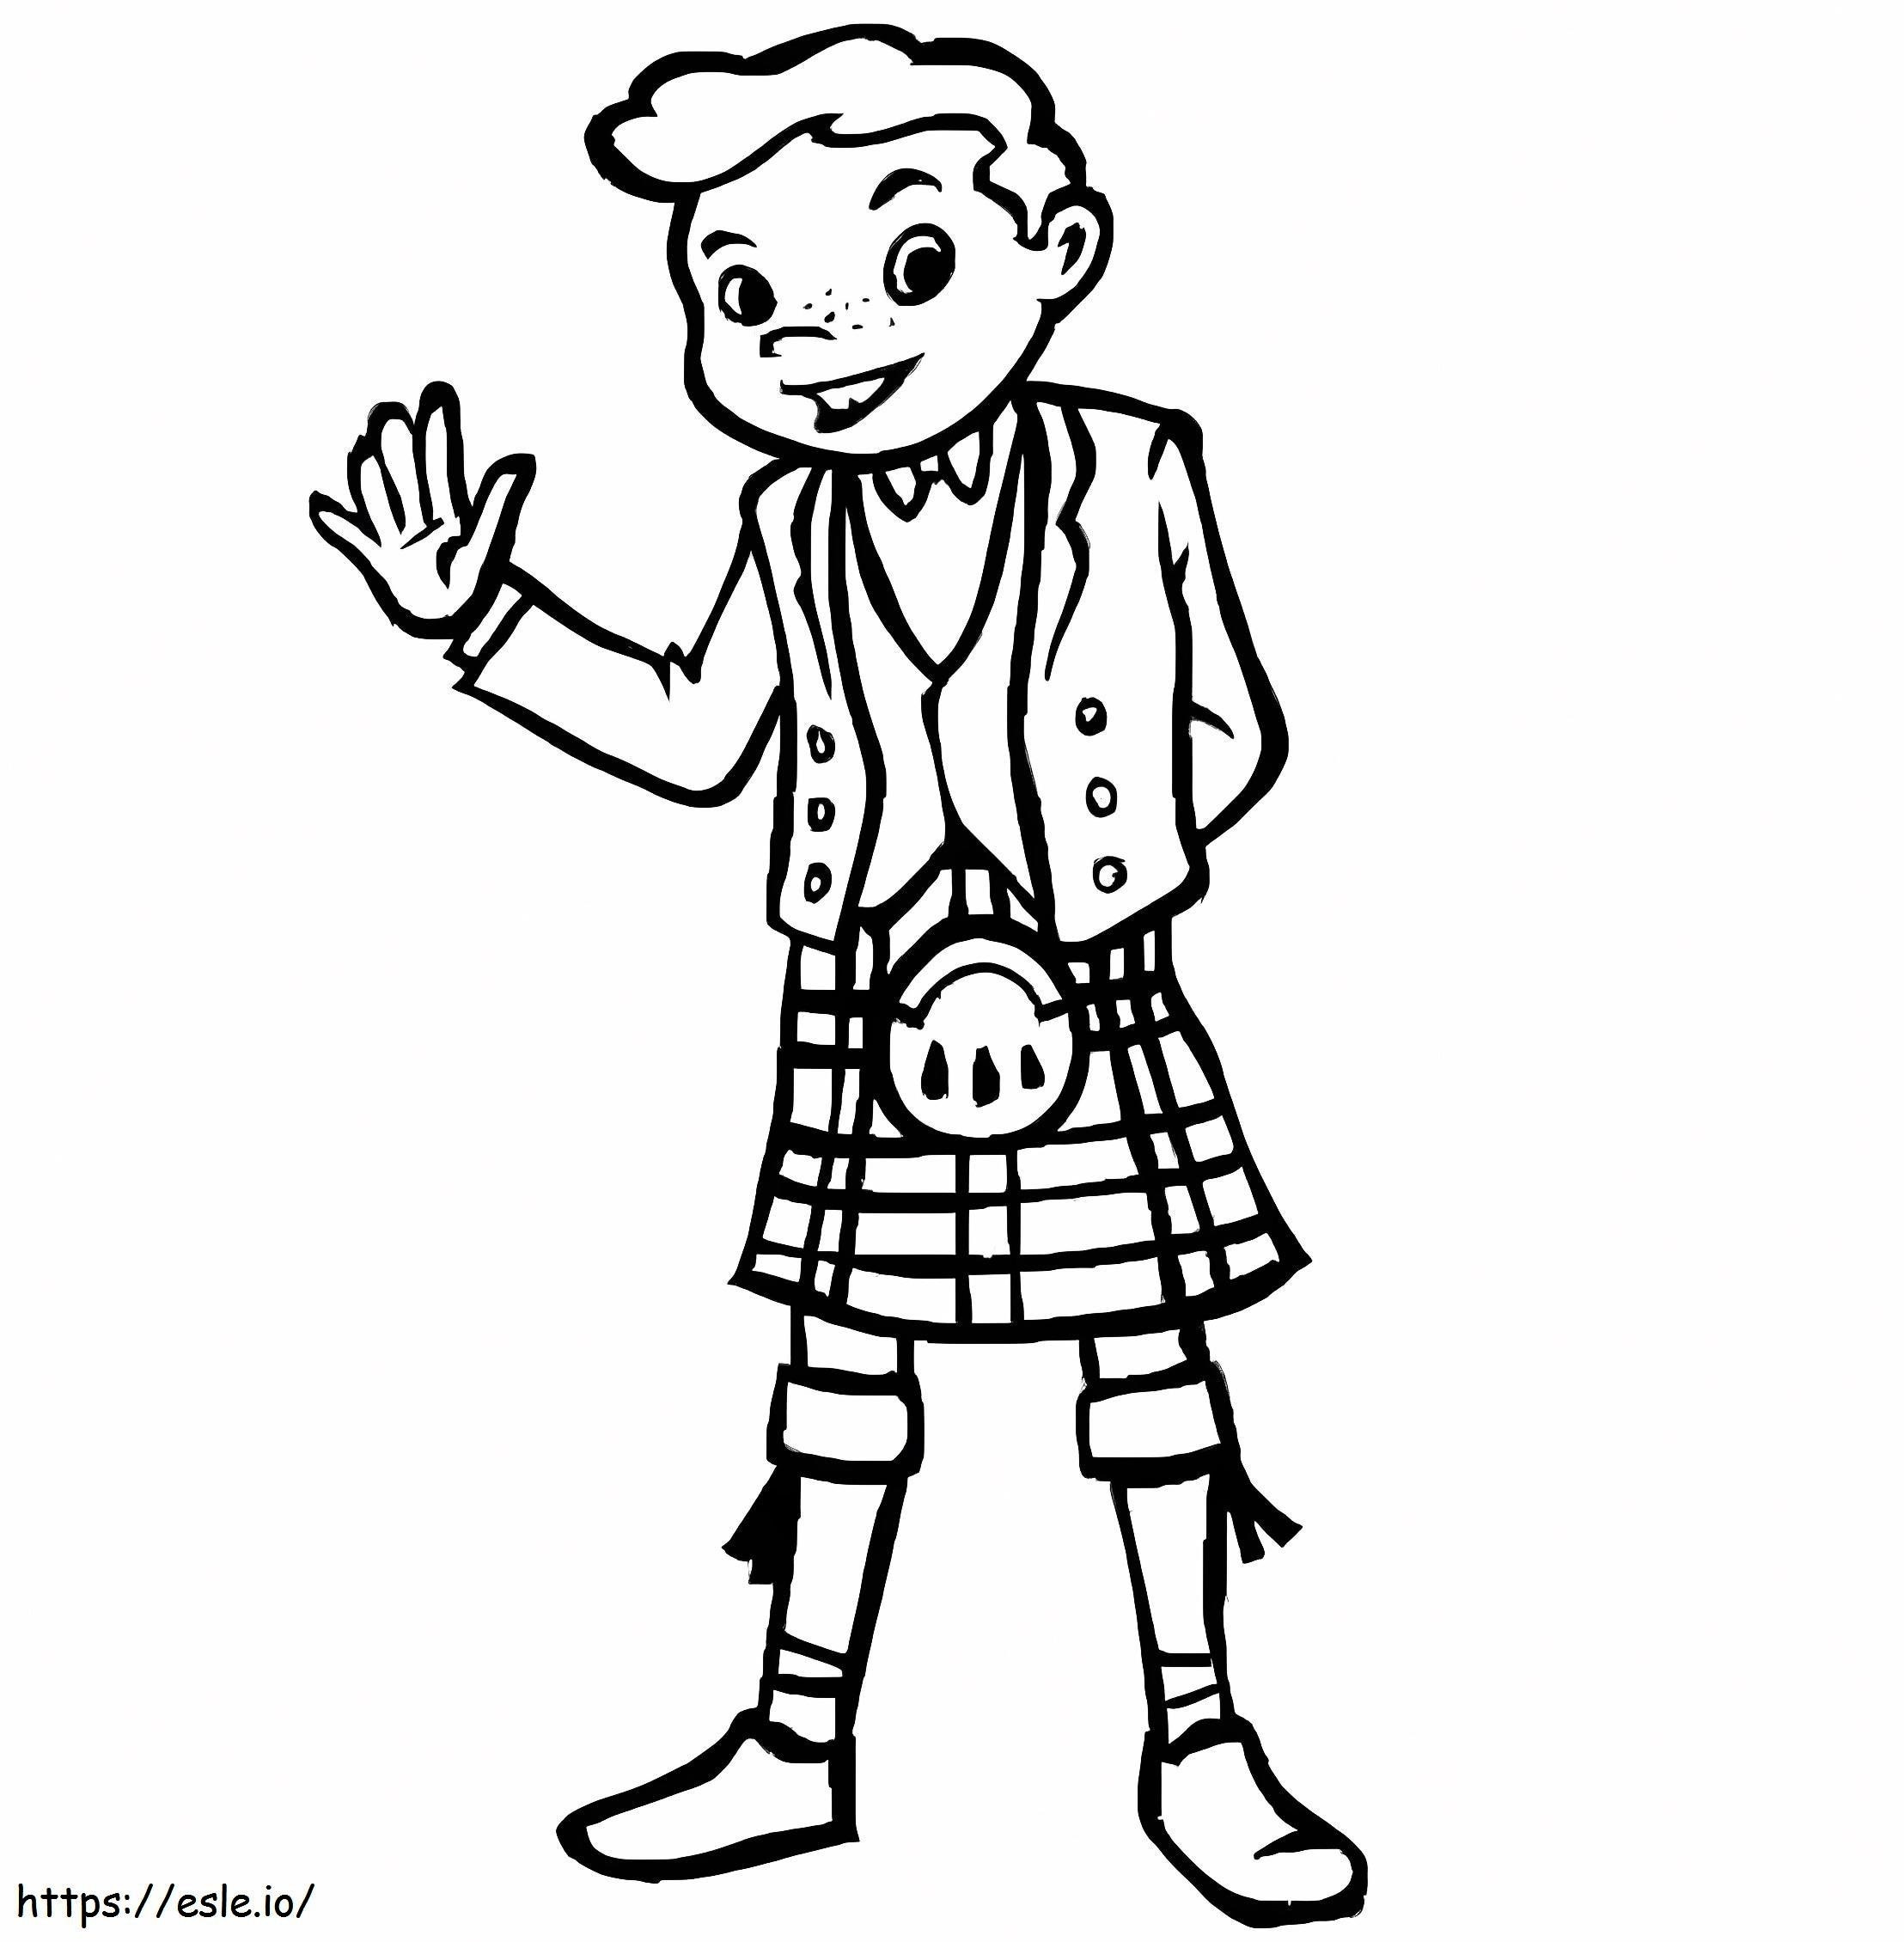 Un băiat scoțian de colorat